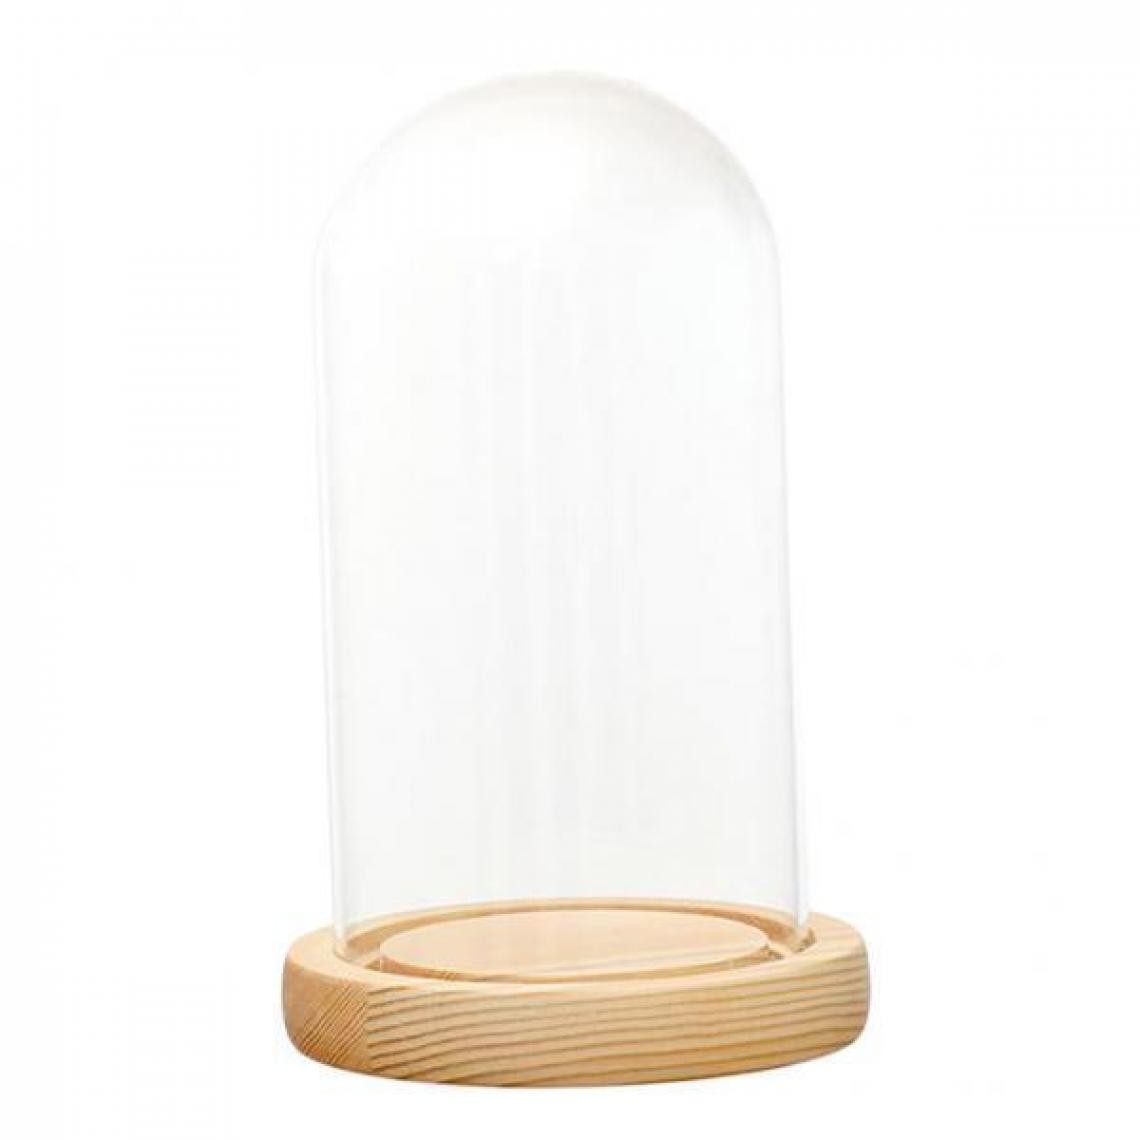 marque generique - transparent avec socle en bois - Vases